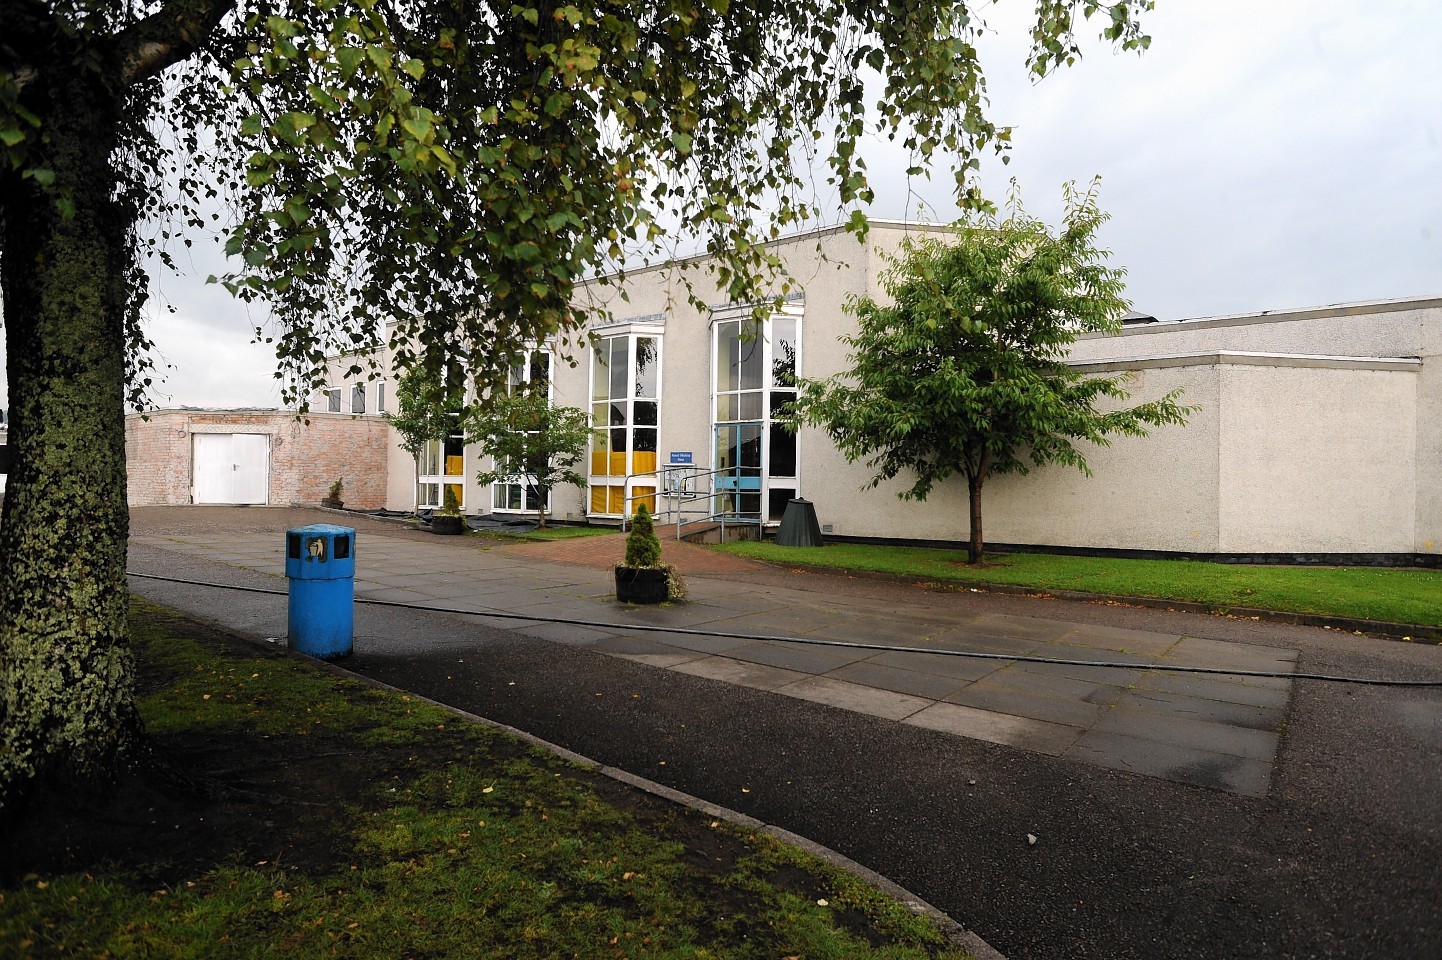 Cauldeen Primary School, Inverness